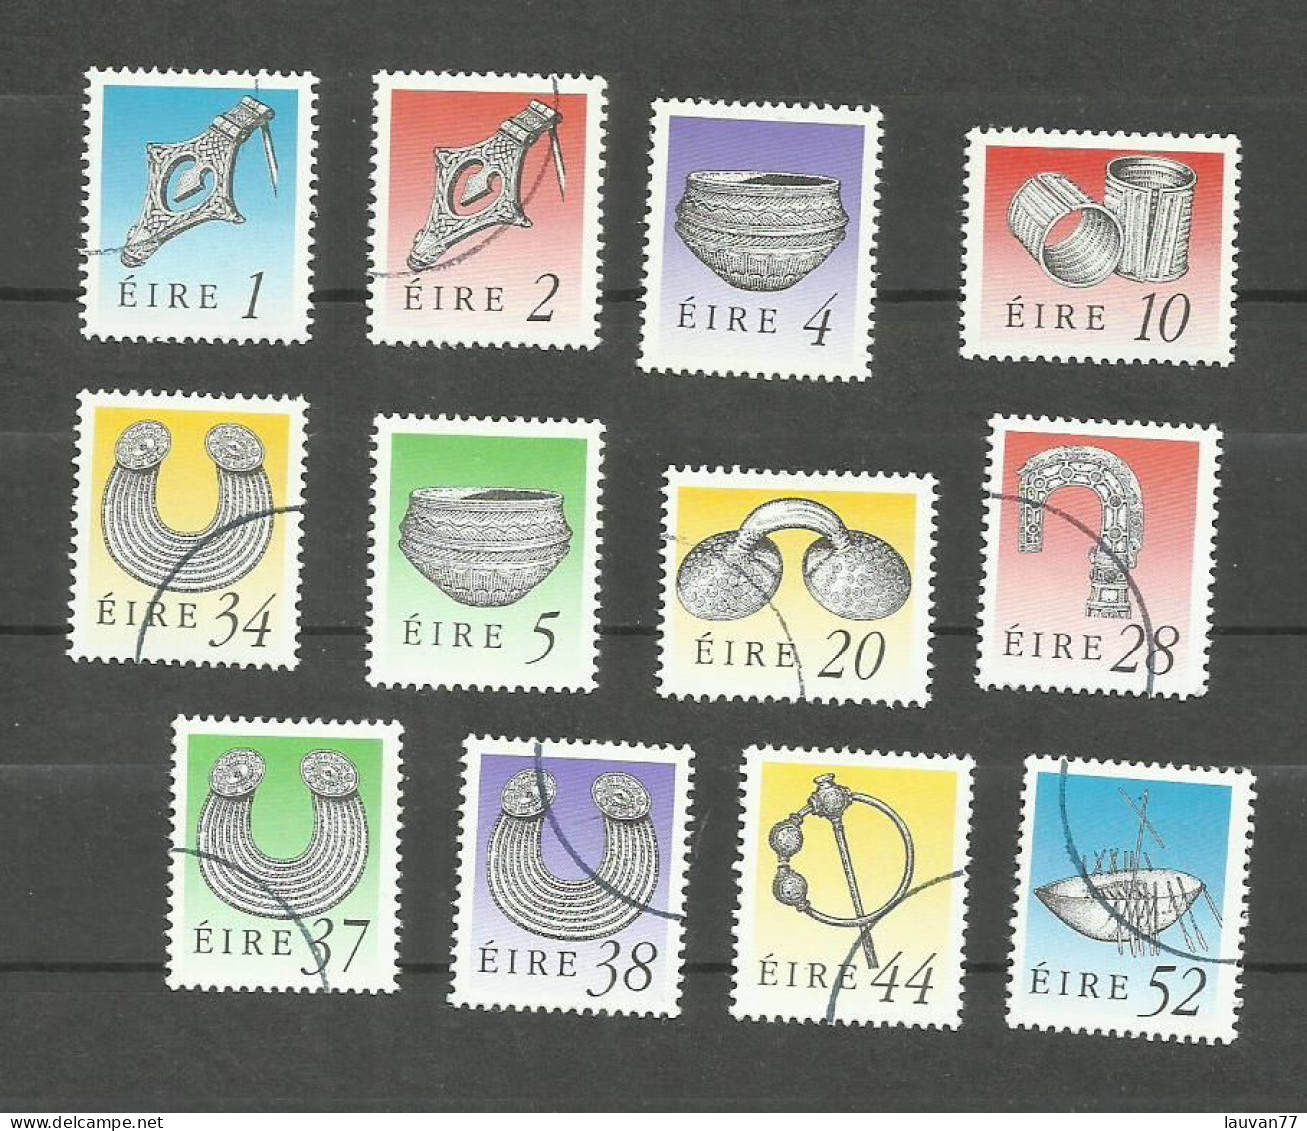 Irlande N°726 à 730, 744, 745, 752 à 756 Cote 5.75€ - Used Stamps